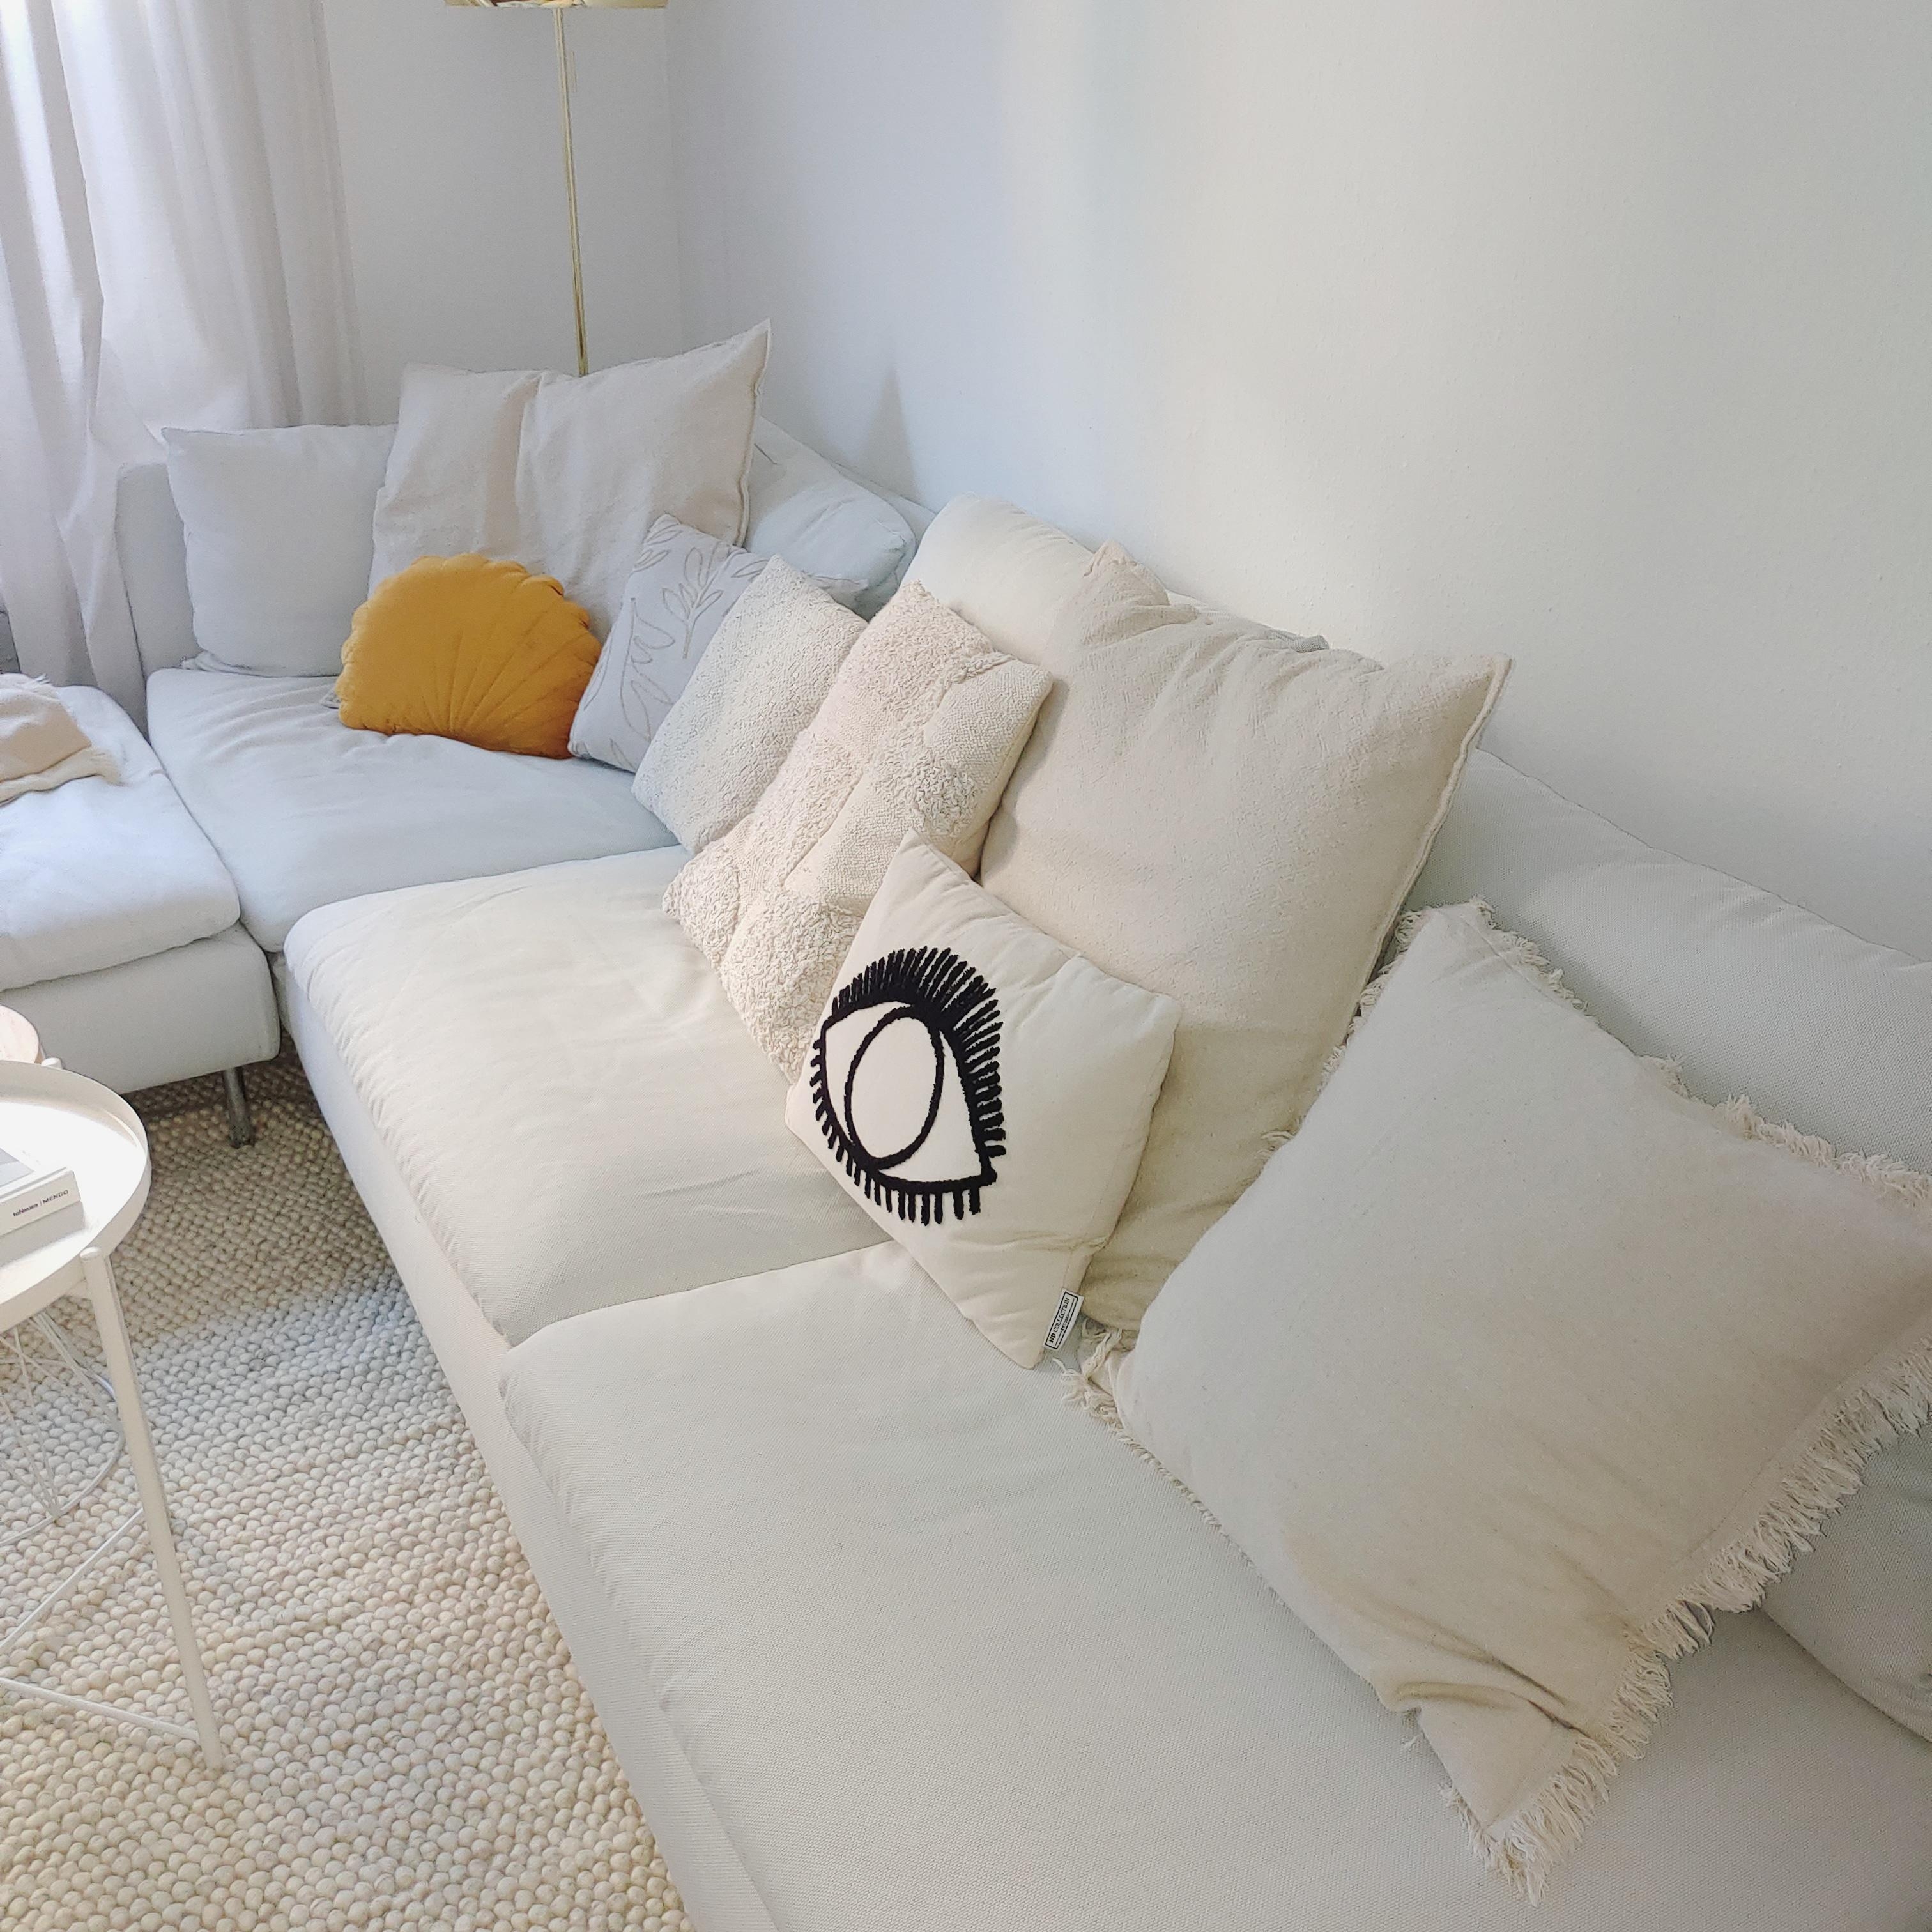 Verliebt in den neuen Teppich...

#Teppich #Sofa #Skandi #Hygge #Kissen #Wohnzimmer #couchliebt 